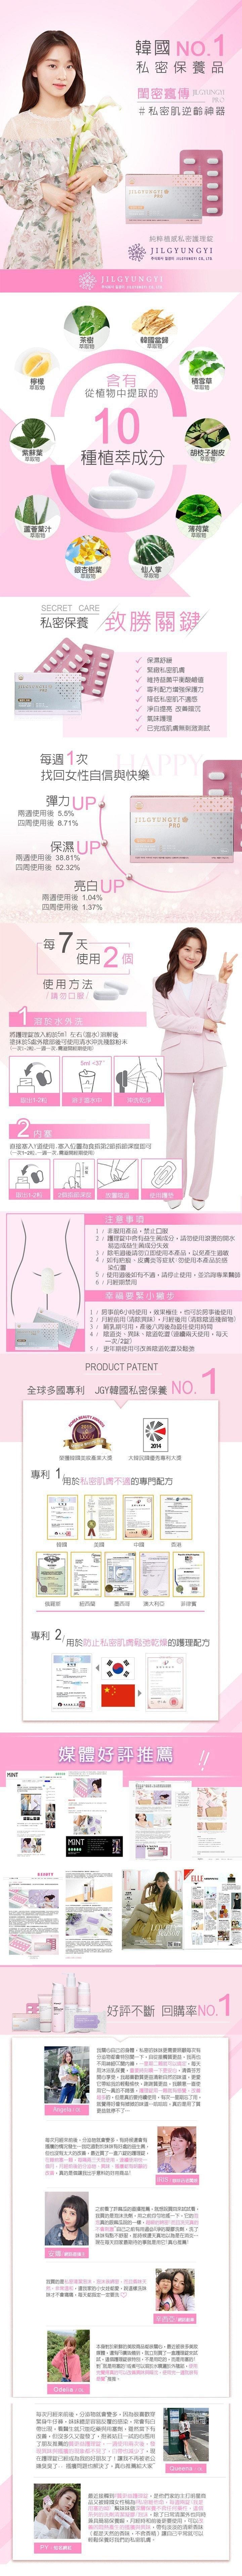 韩国 JILGYUNGYI 质更益 女性私处清洁护理片+清洁啫喱套装 